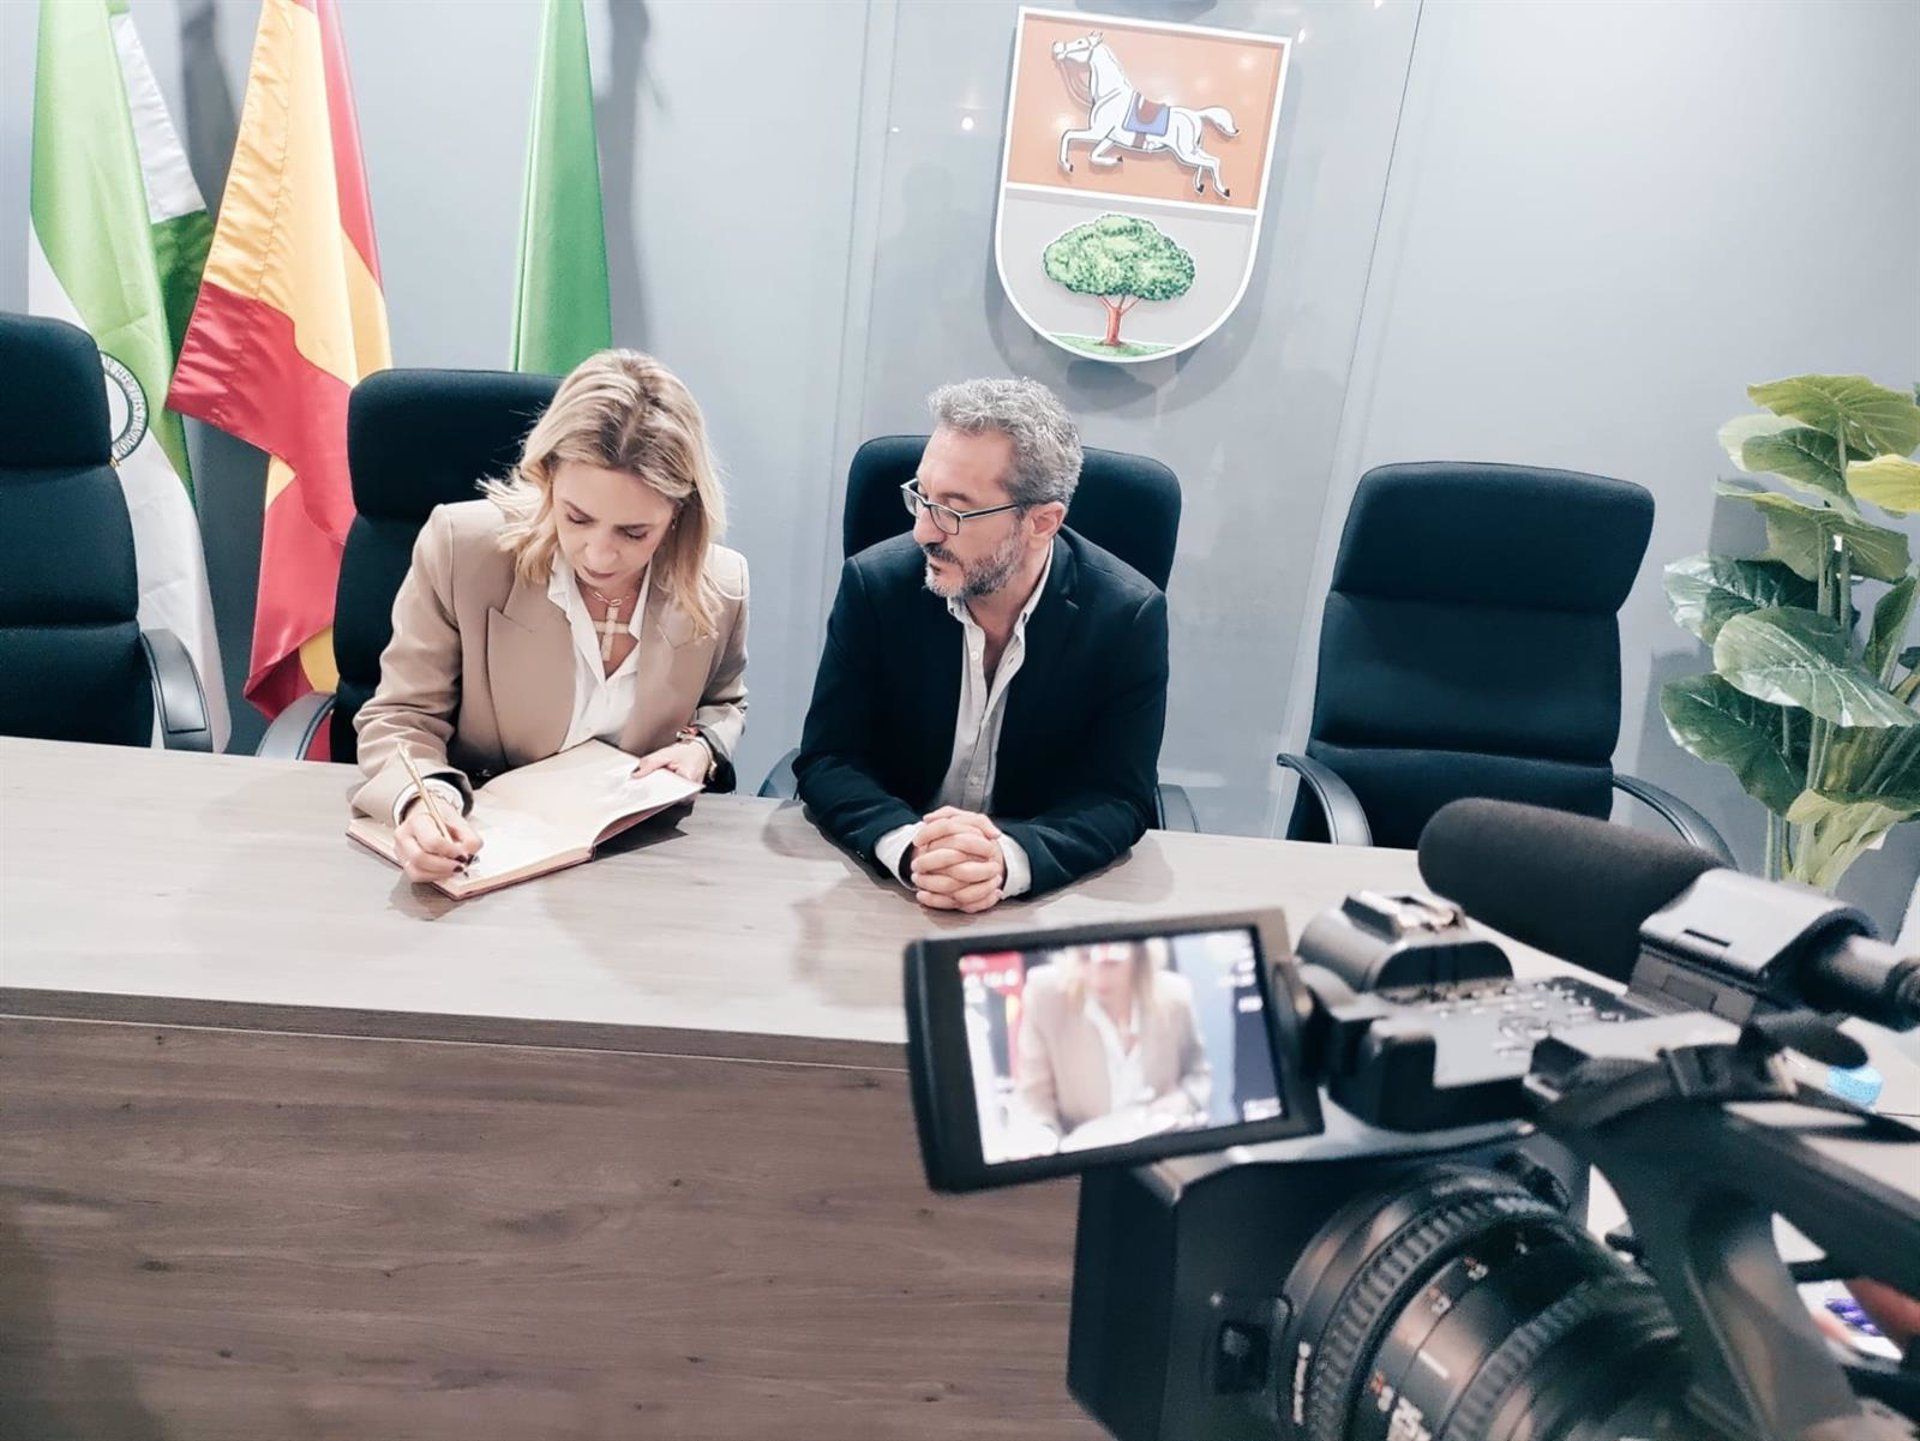 La presidenta de Diputación, Almudena Martínez del Junco, firma en el Libro de Honor del Ayuntamiento de Puerto Serrano, junto al alcalde.